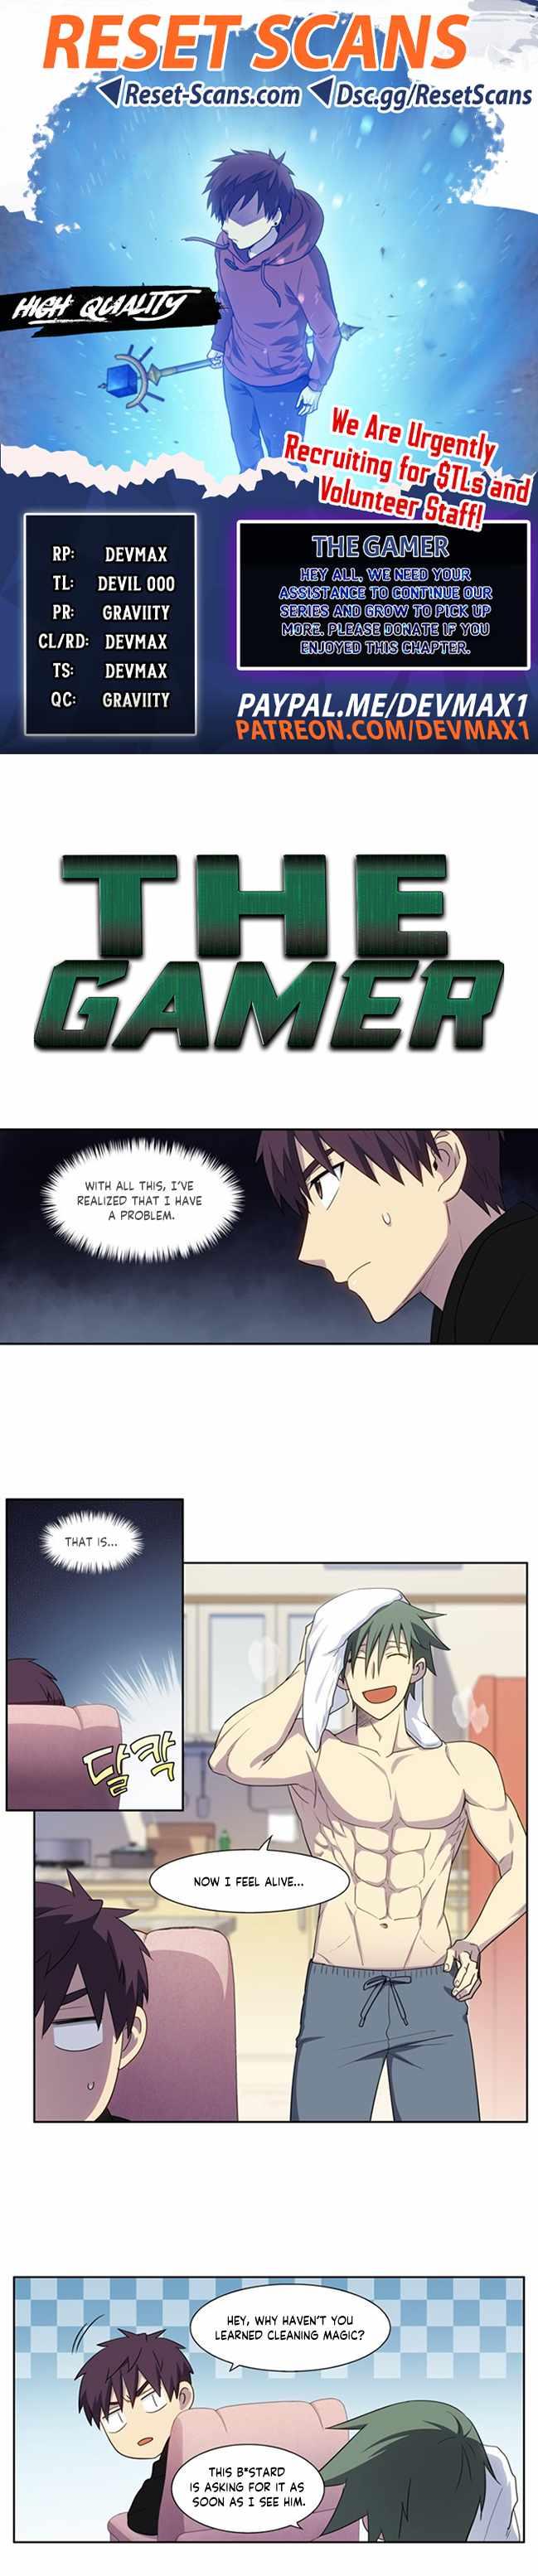 Read The Gamer Chapter 426 on Mangakakalot